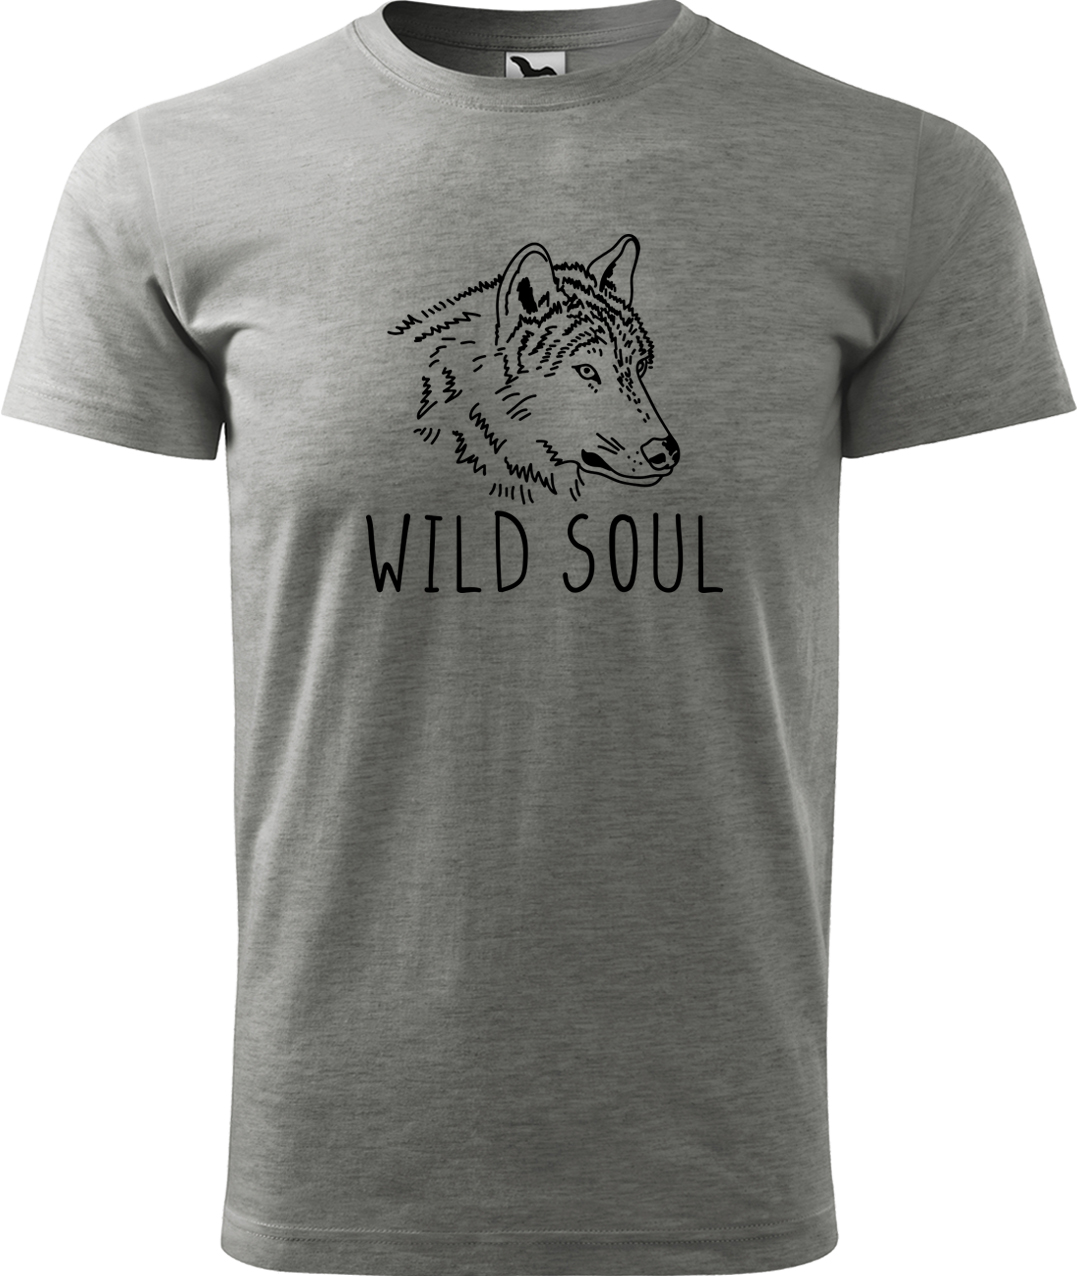 Pánské tričko s vlkem - Wild soul Velikost: XL, Barva: Tmavě šedý melír (12), Střih: pánský